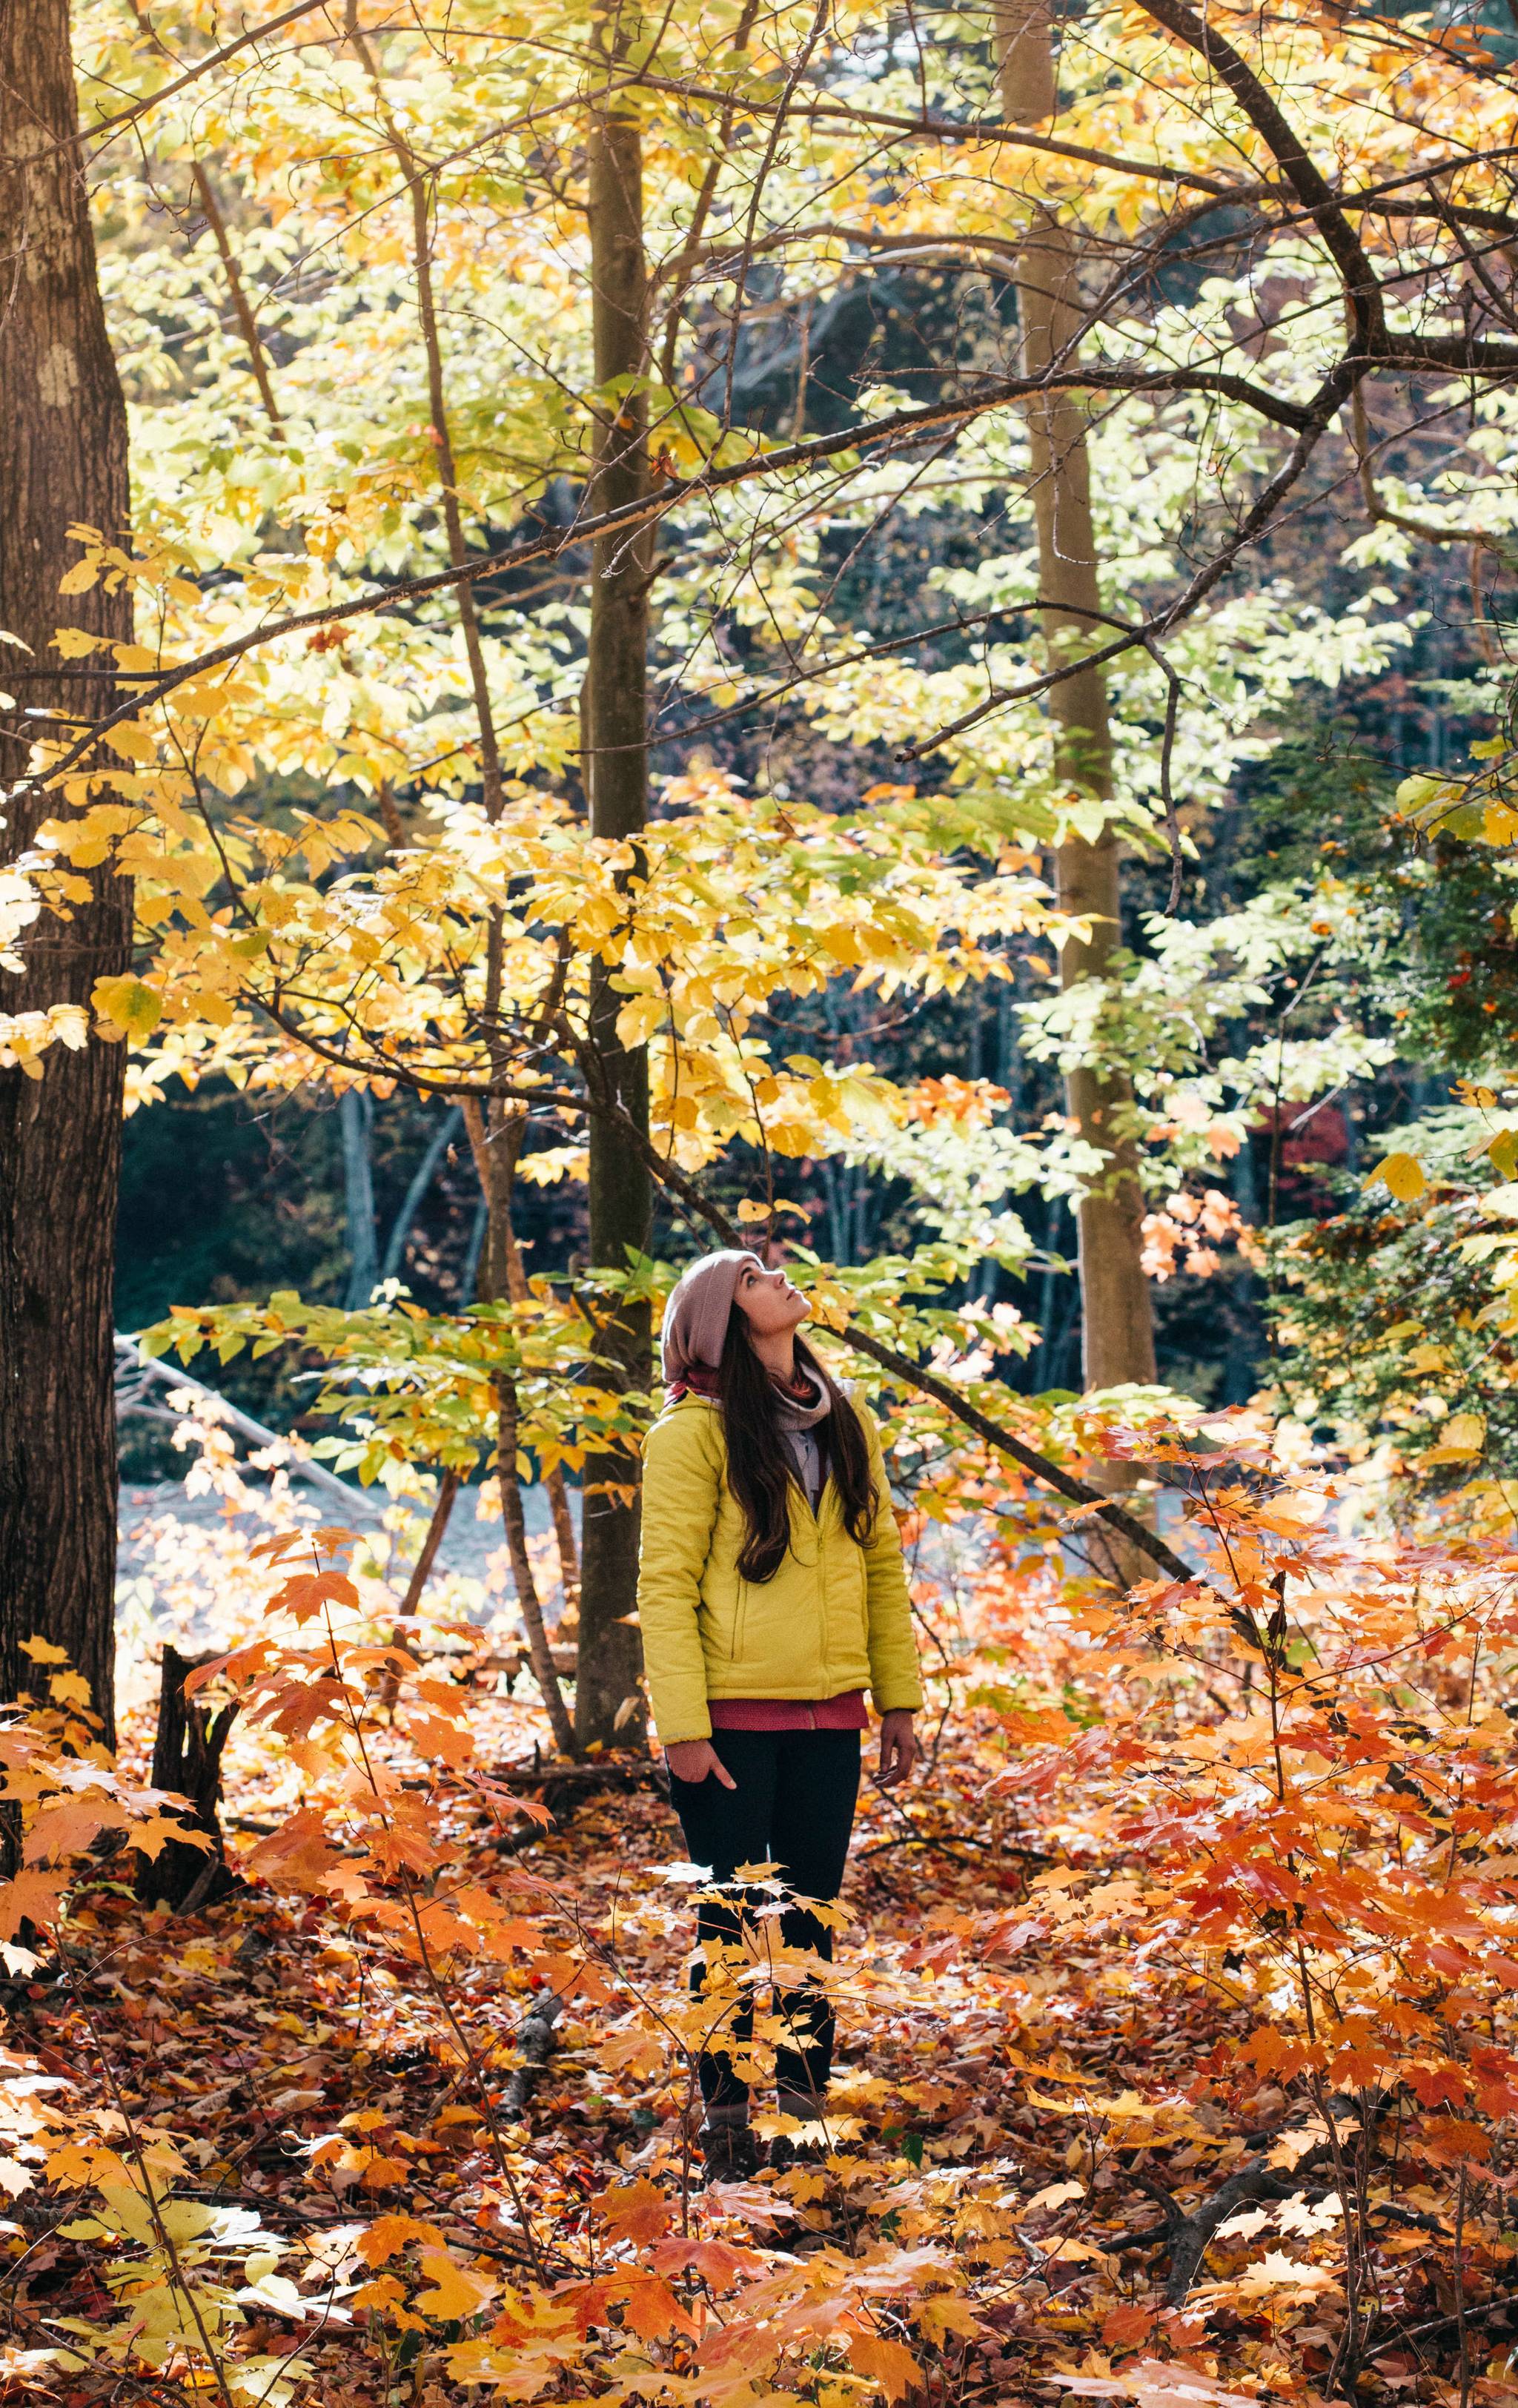 Leaf peeping: autumn appreciators get outdoors